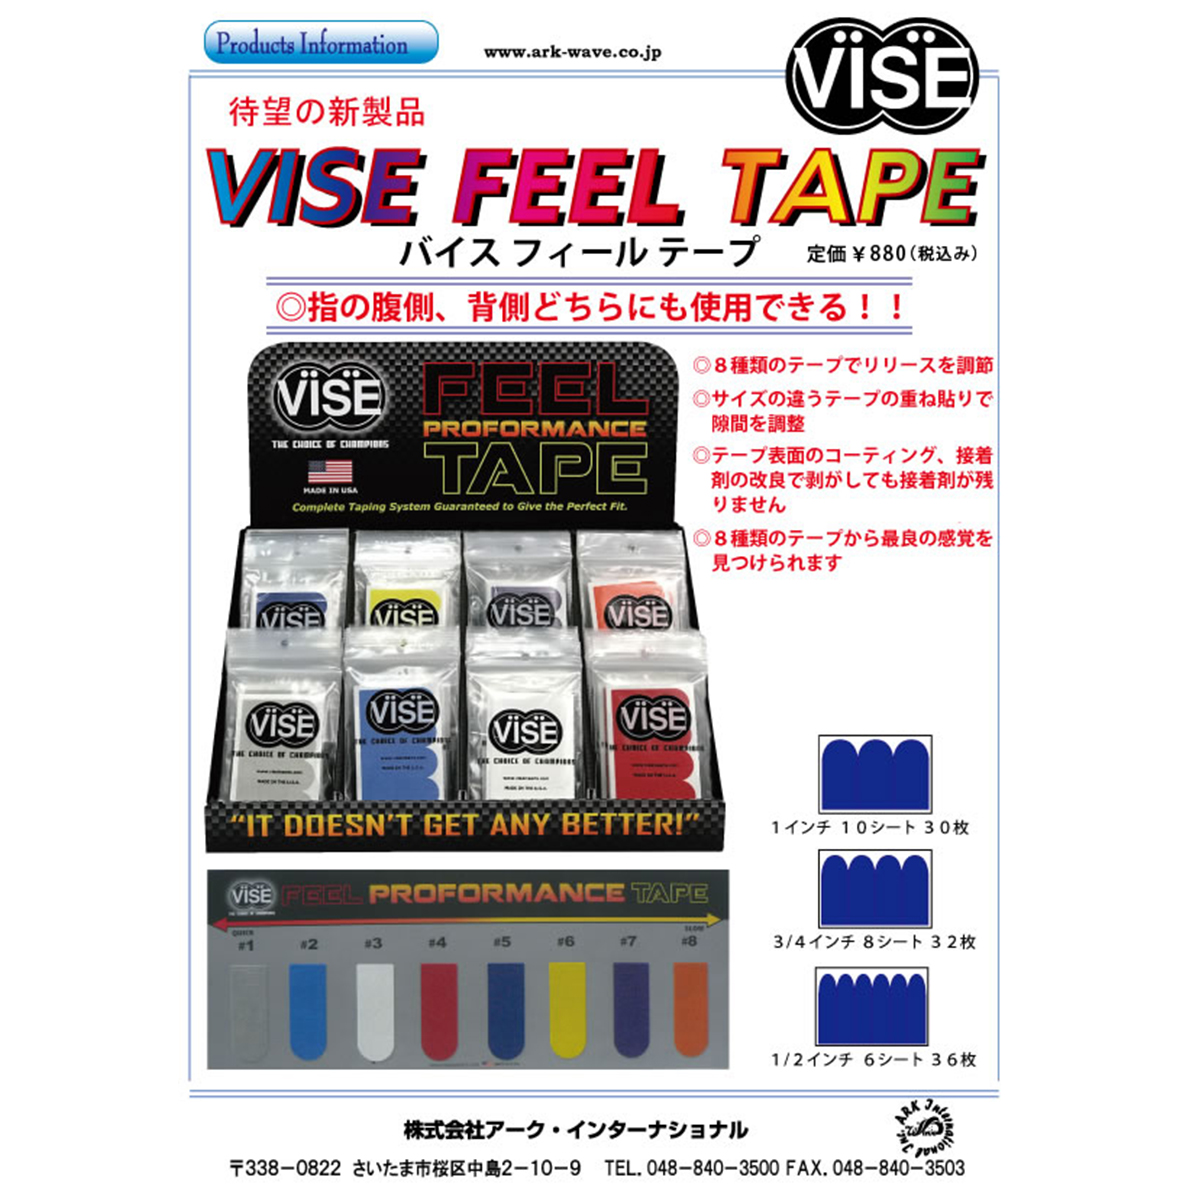 【12袋セット】VISE フィールテープ#3(白色) - ウインドウを閉じる